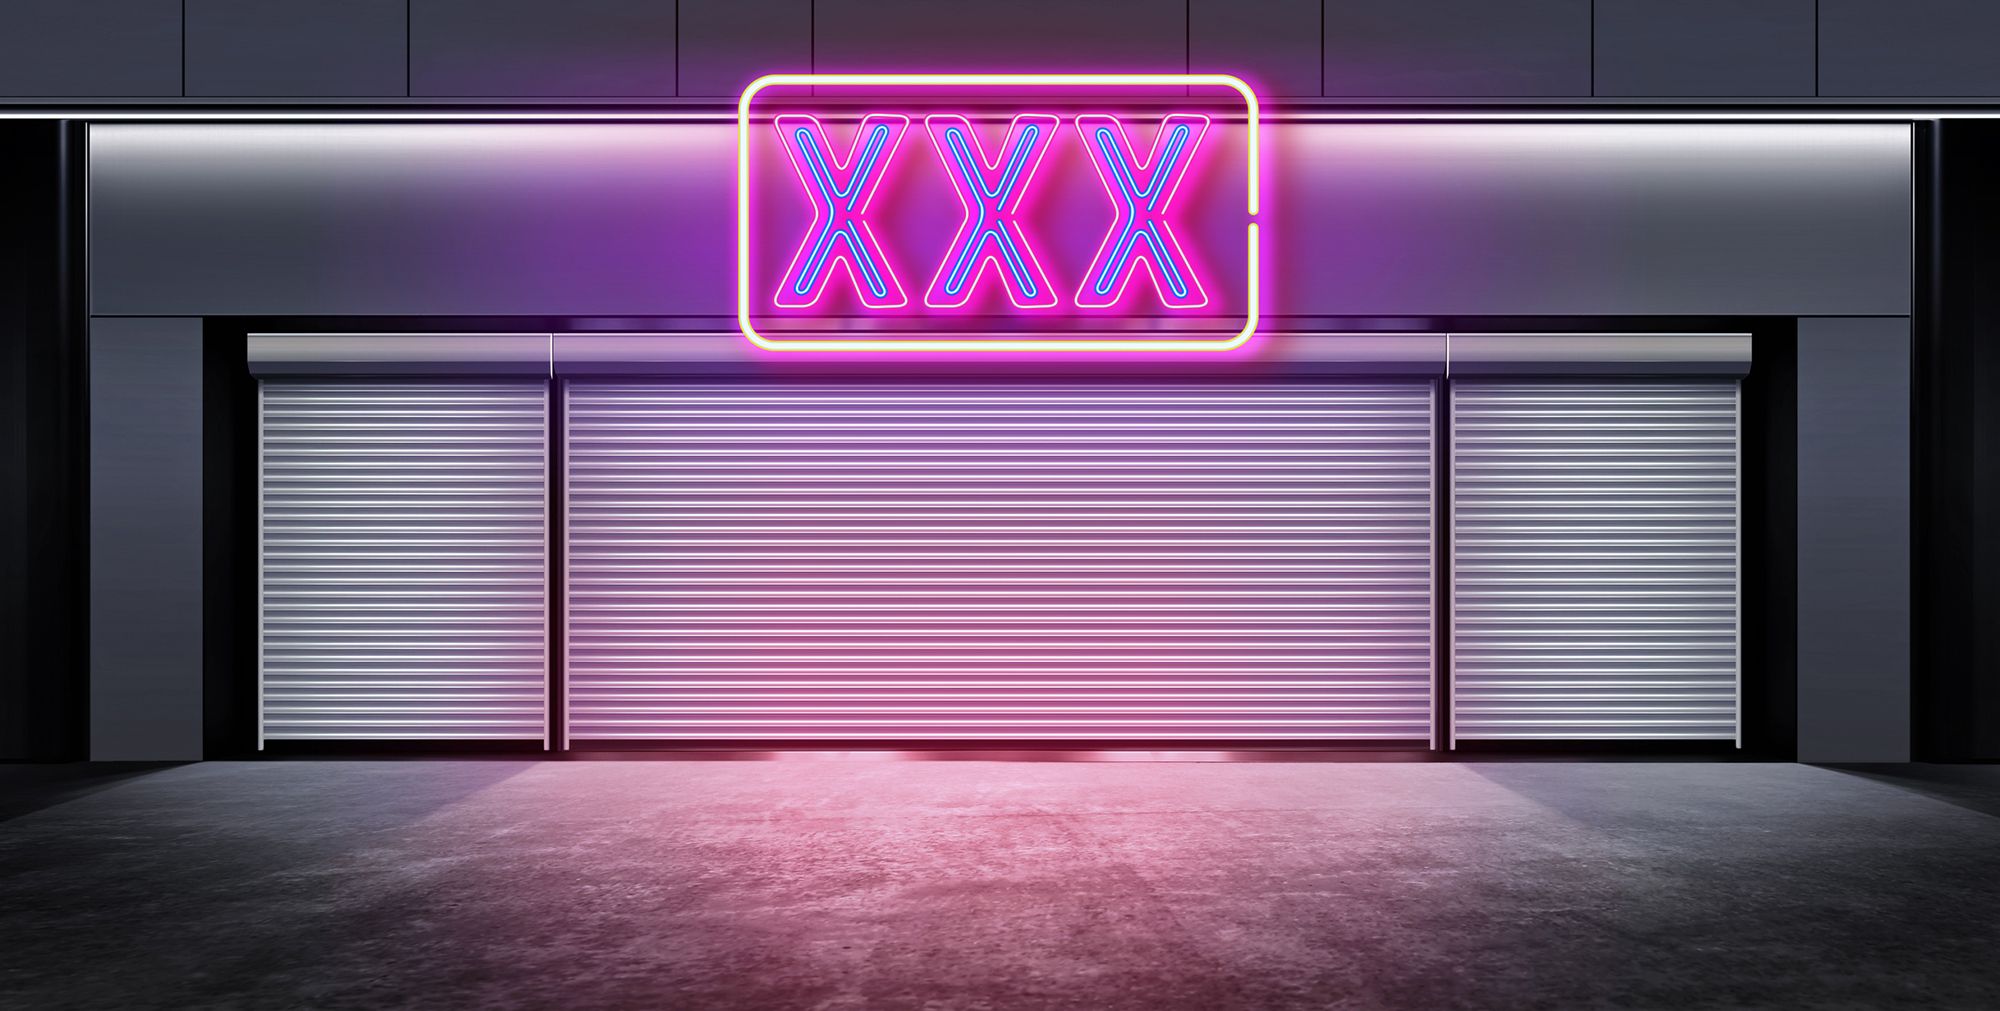 Frontansicht eines Clubs mit 3 neonfarbenen X als Schild über dem Eingang